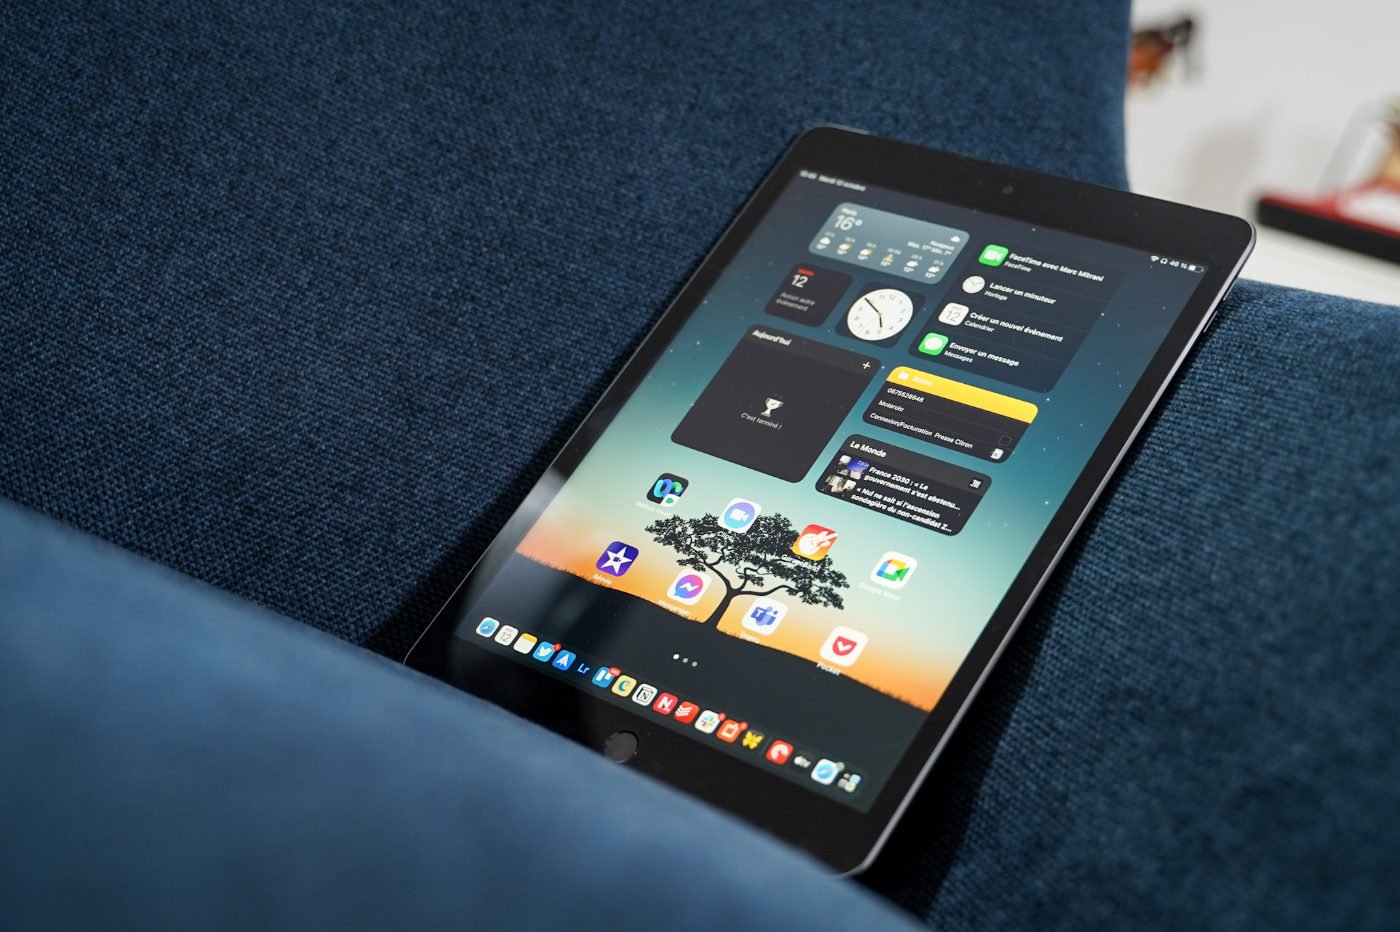 APPLE 10,9 WiFi 64 Go Bleu (10e gen.) - iPad Pas Cher